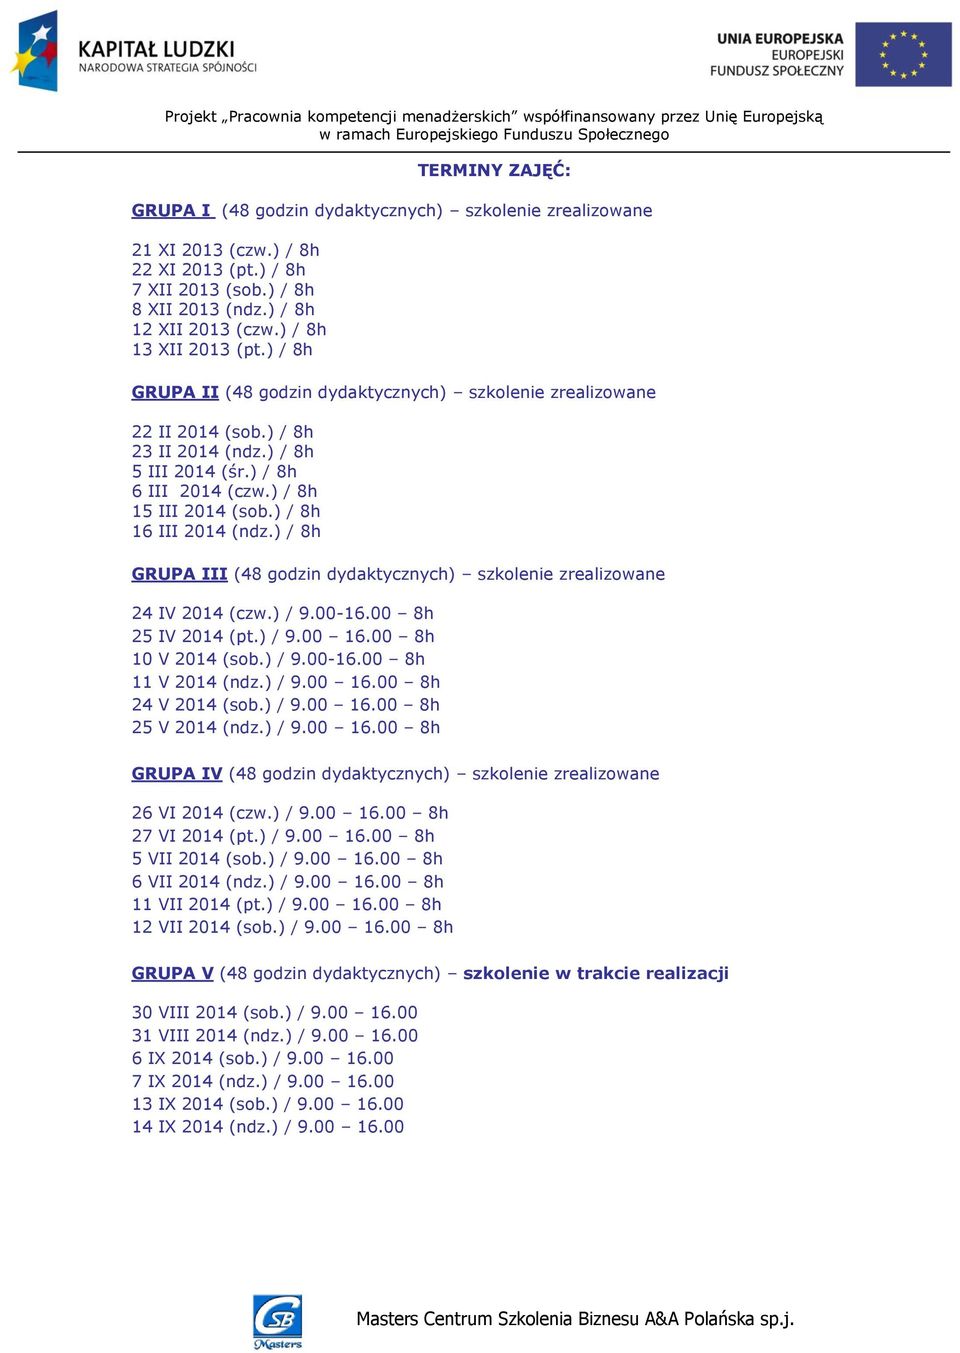 ) / 8h 16 III 2014 (ndz.) / 8h GRUPA III (48 godzin dydaktycznych) szkolenie zrealizowane 24 IV 2014 (czw.) / 9.00-16.00 8h 25 IV 2014 (pt.) / 9.00 16.00 8h 10 V 2014 (sob.) / 9.00-16.00 8h 11 V 2014 (ndz.